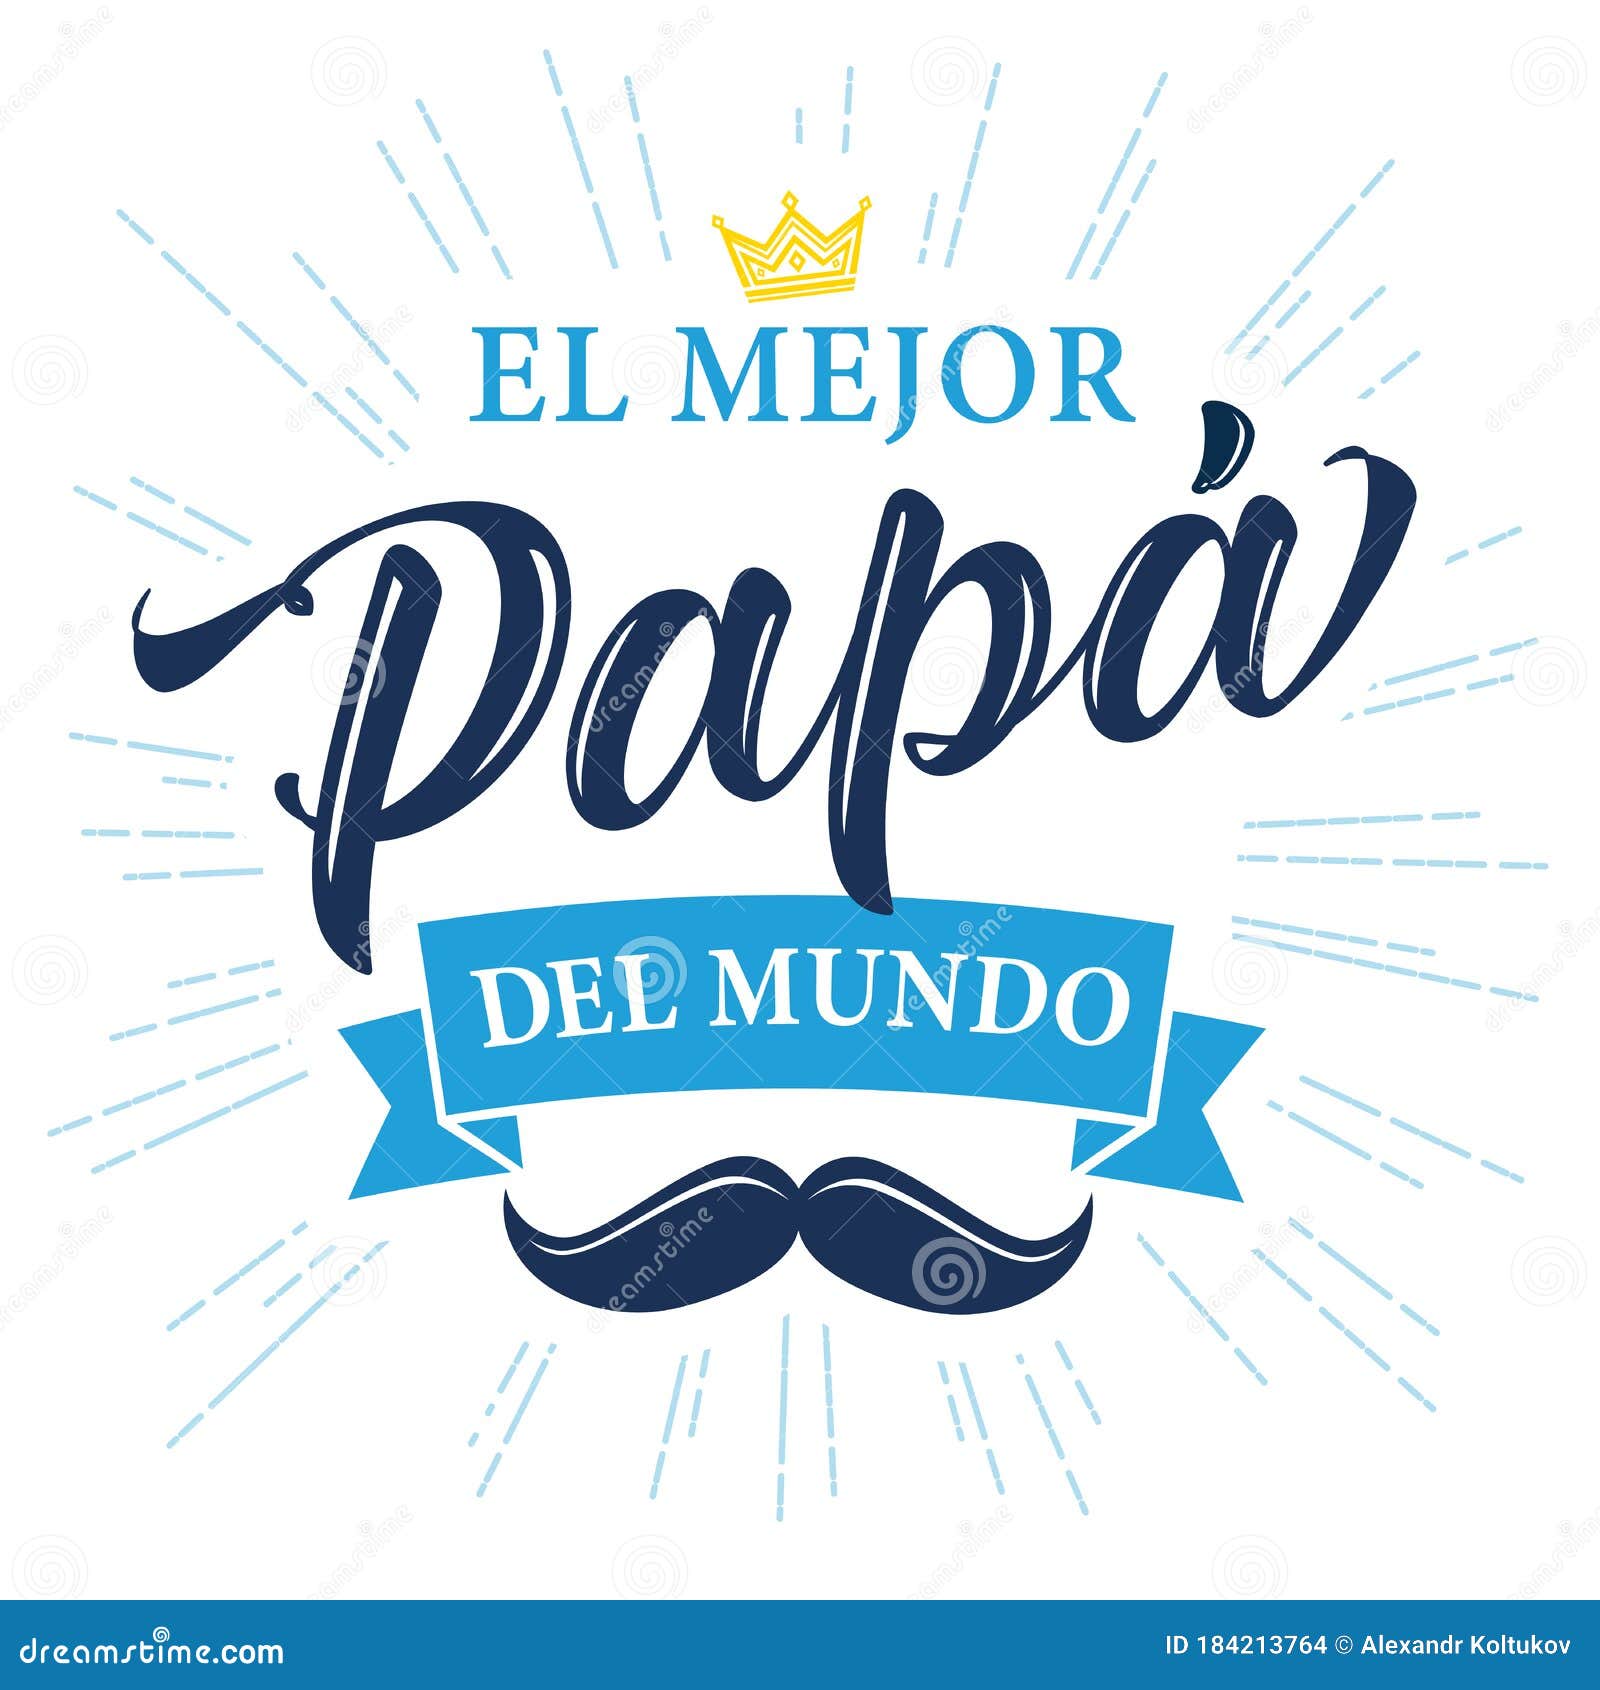 el mejor papa del mundo spanish calligraphy